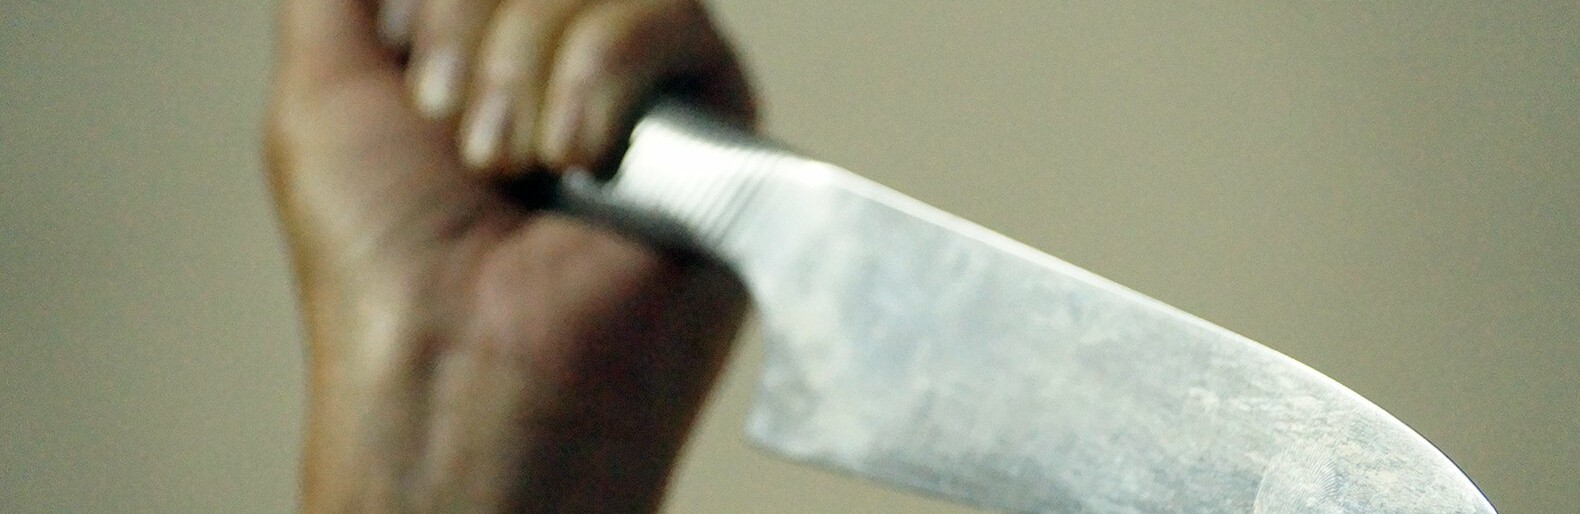 45-летняя белгородка зарезала приятеля в пьяной ссоре у него дома